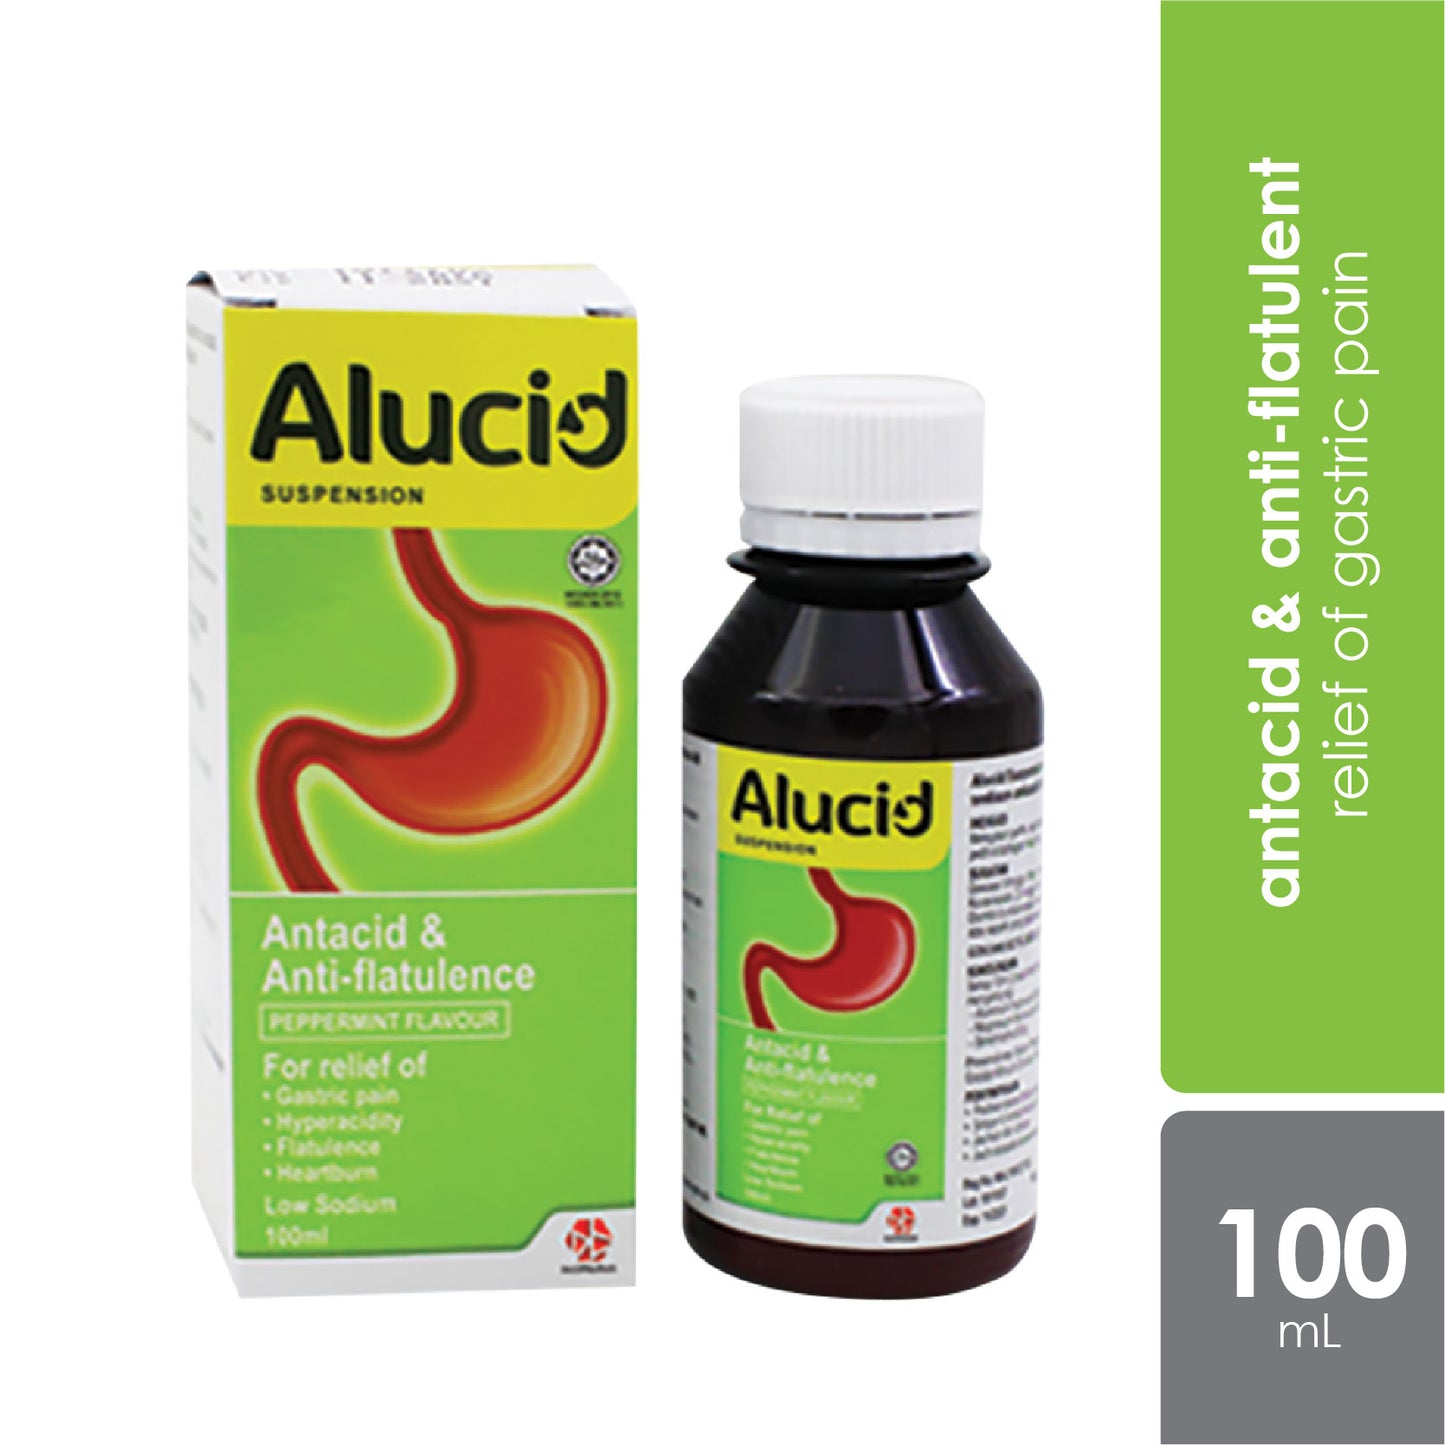 Alucid Suspension for Gastric 100mL